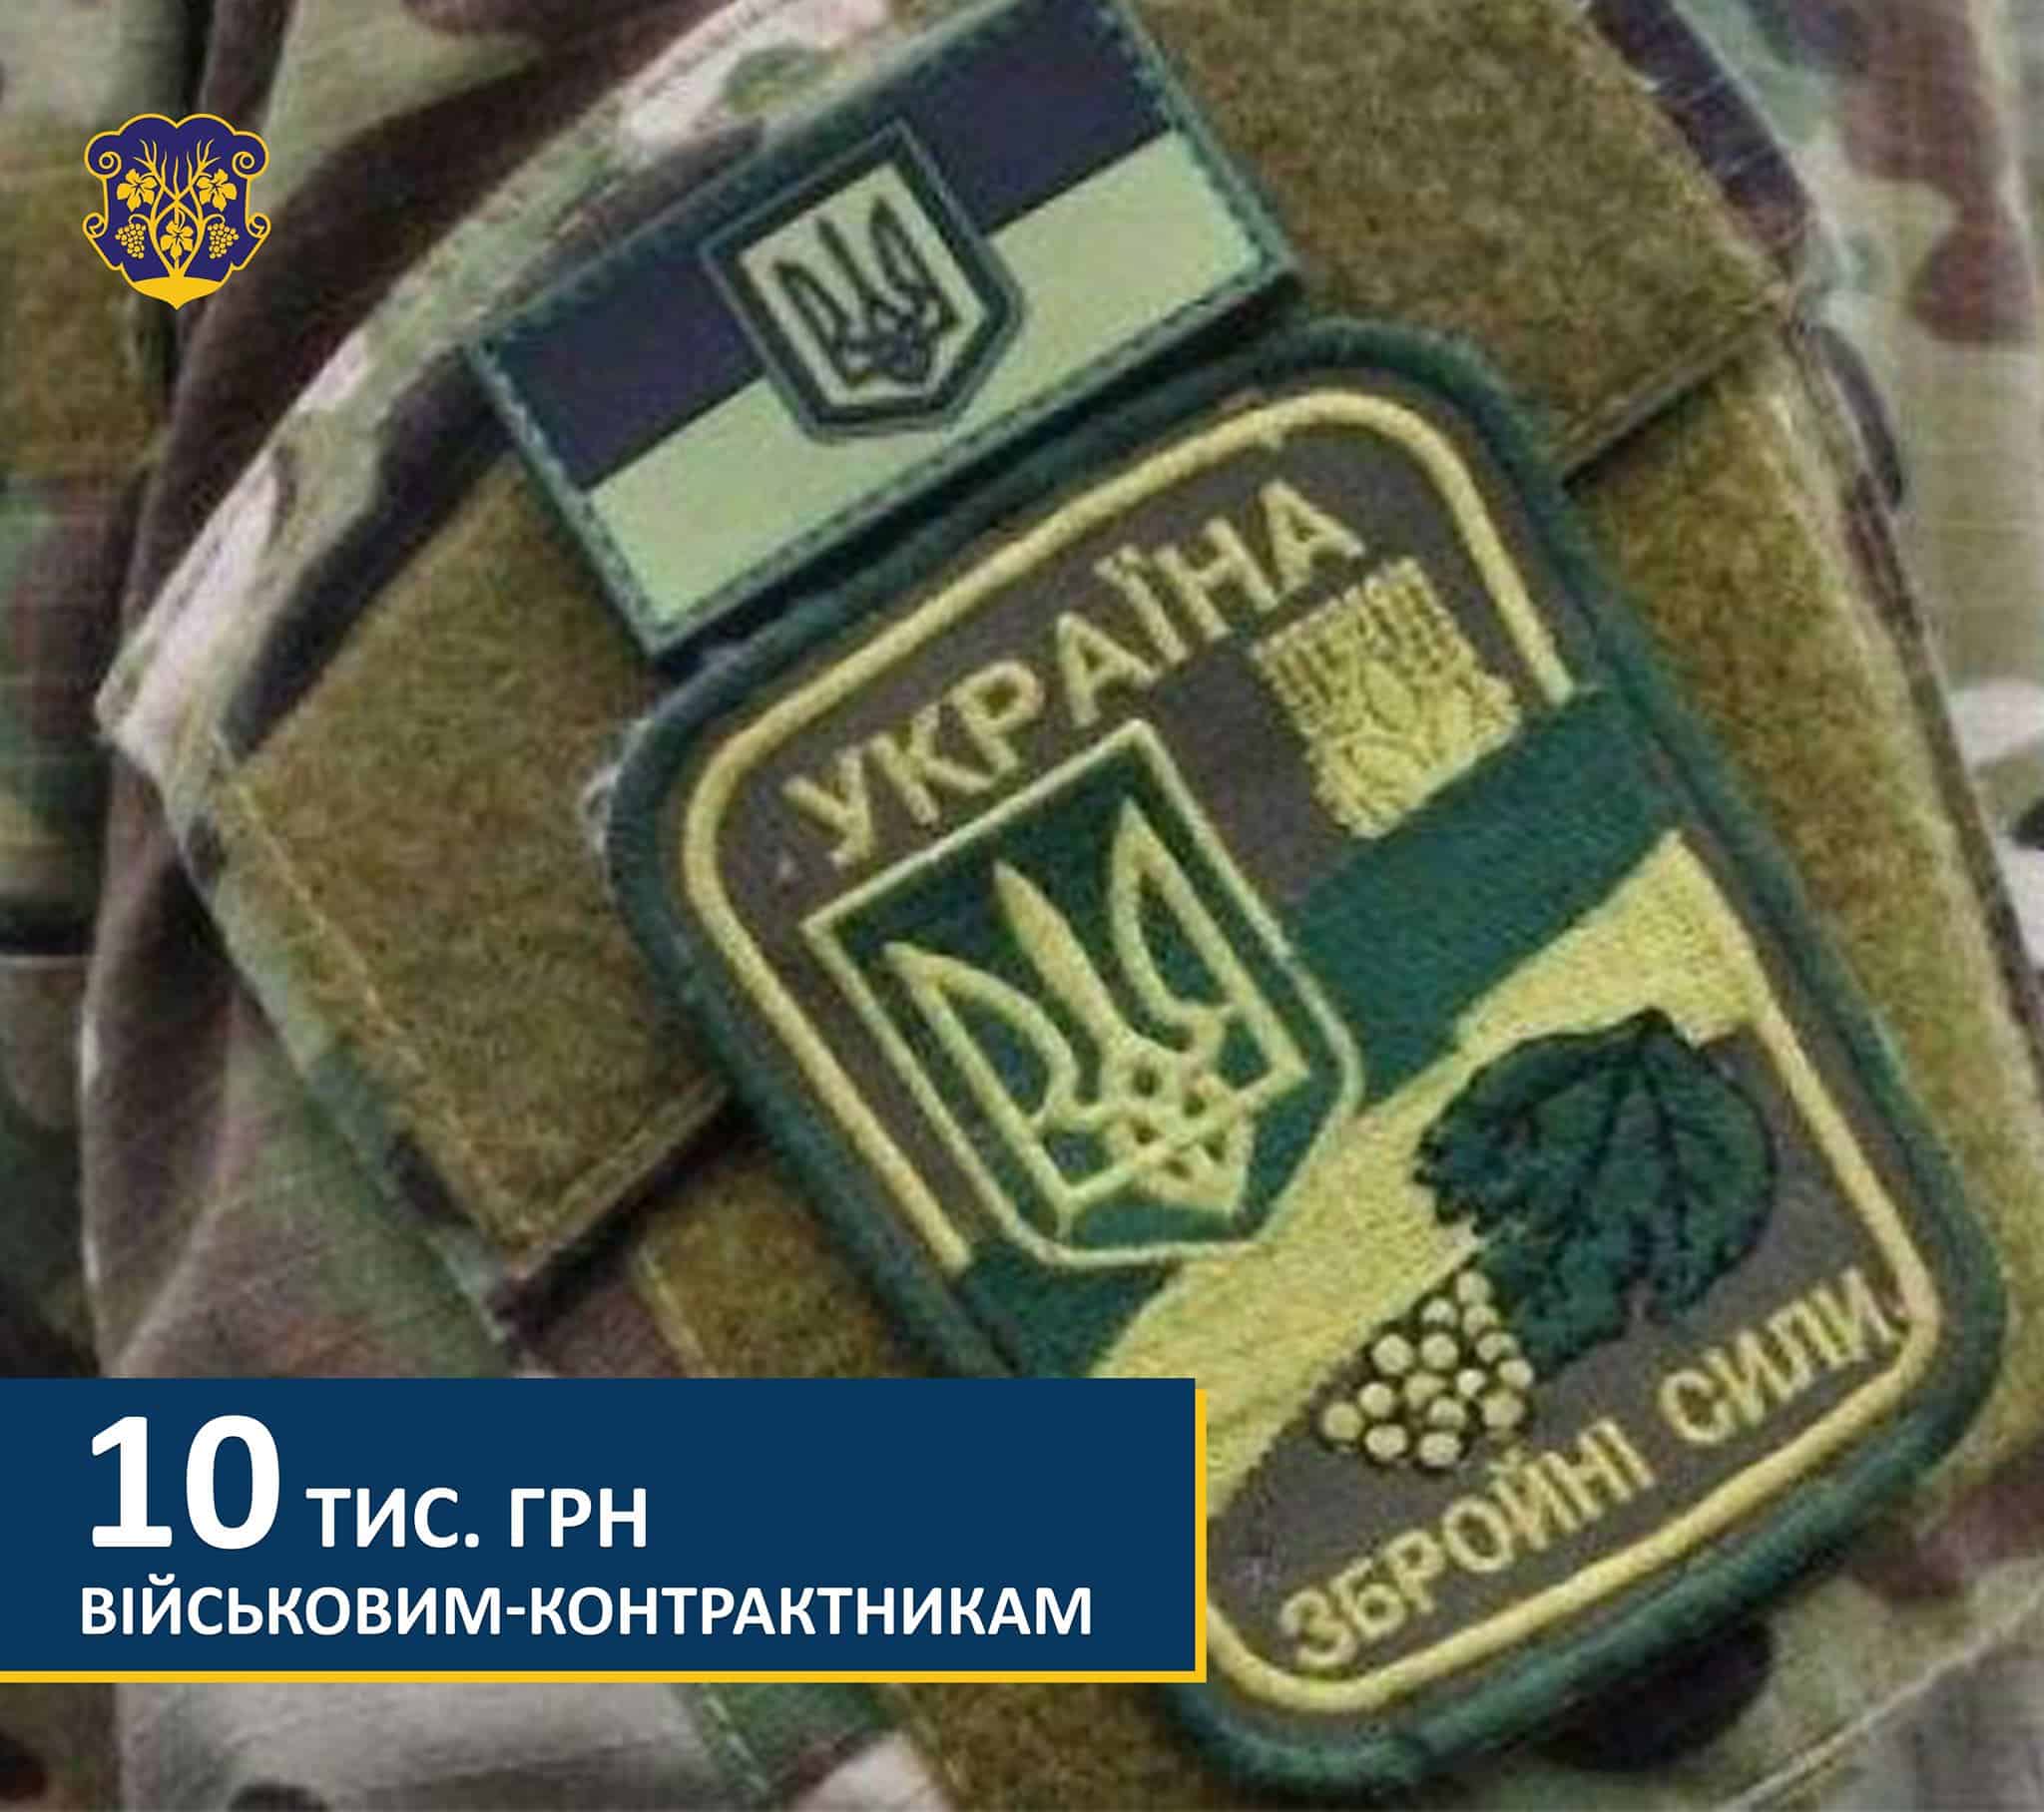 530 тис. грн із бюджету Ужгорода спрямували на виплати матеріальної допомоги військовослужбовцям-контрактникам